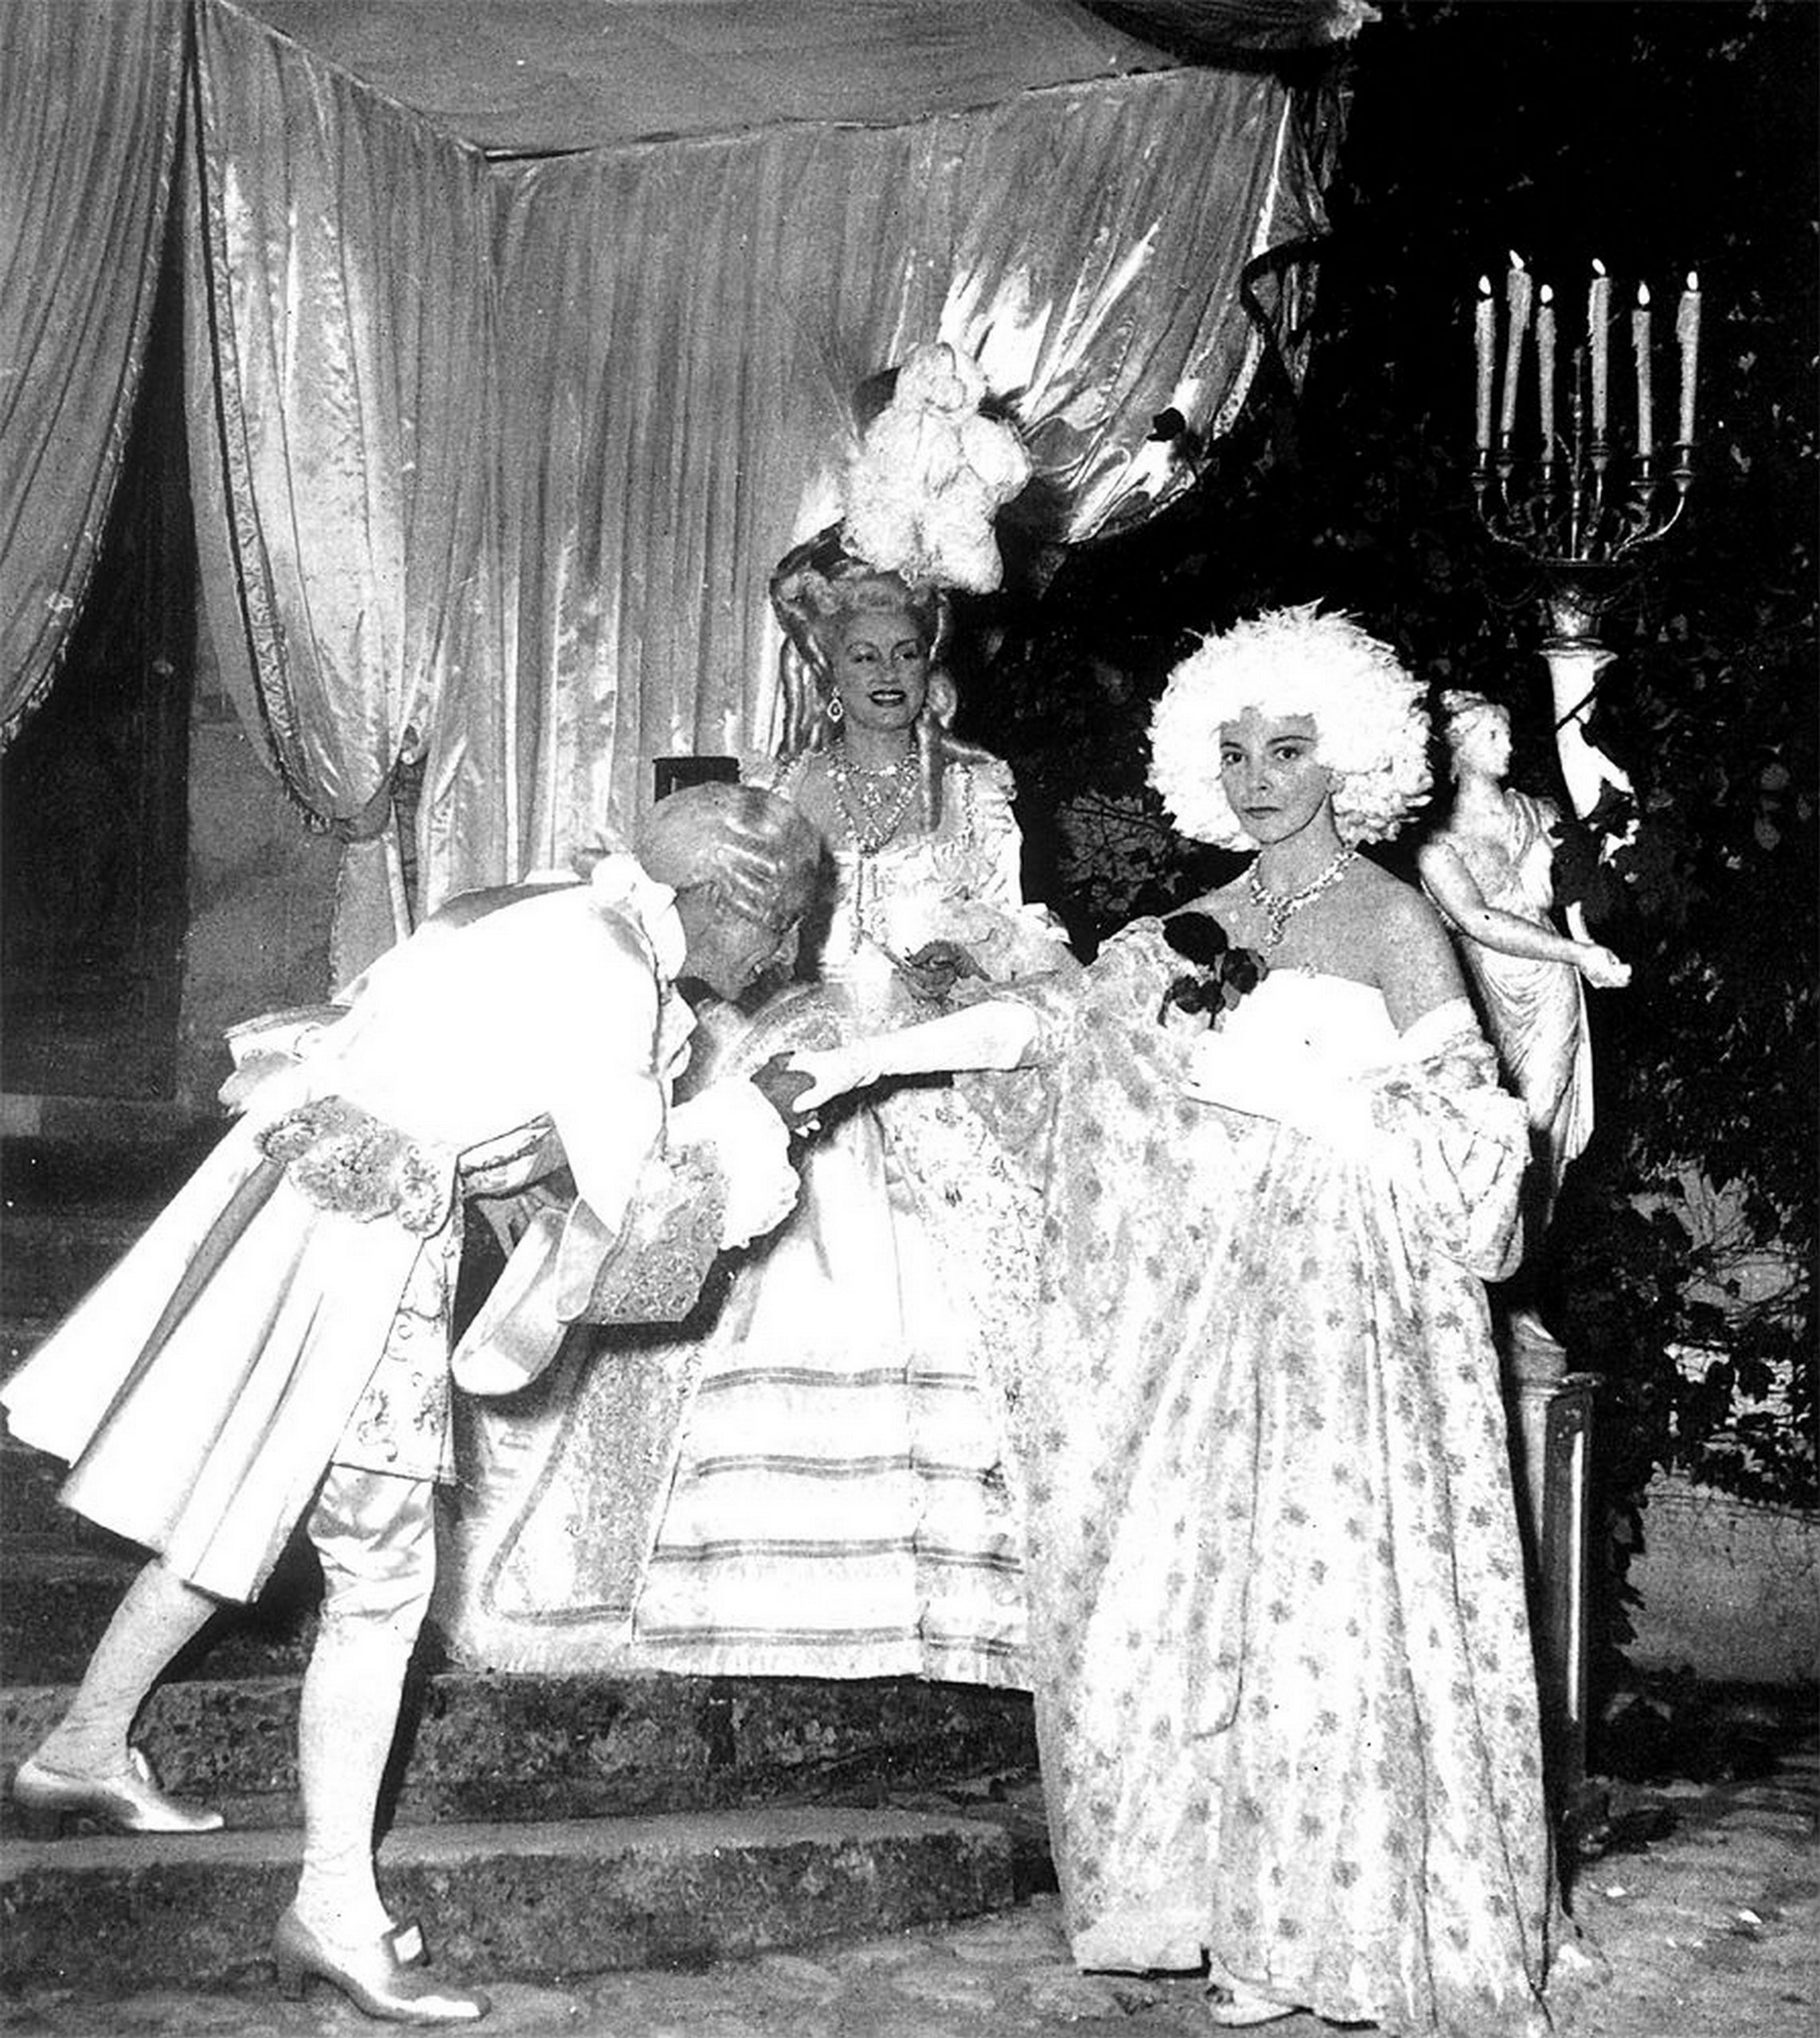 L’un des fameux bals costumés que Jacques Fath donnait chaque année dans son château de Corbeville, dans les Yvelines (Ici, le bal Blanc de 1951, avec Jacques Fath déguisé en comte d’Artois, sa femme Geneviève Fath (née Geneviève Boucher de La Bruyère) en Marie Antoinette et Léonor Fini en Mme de Pompadour).<br><br>